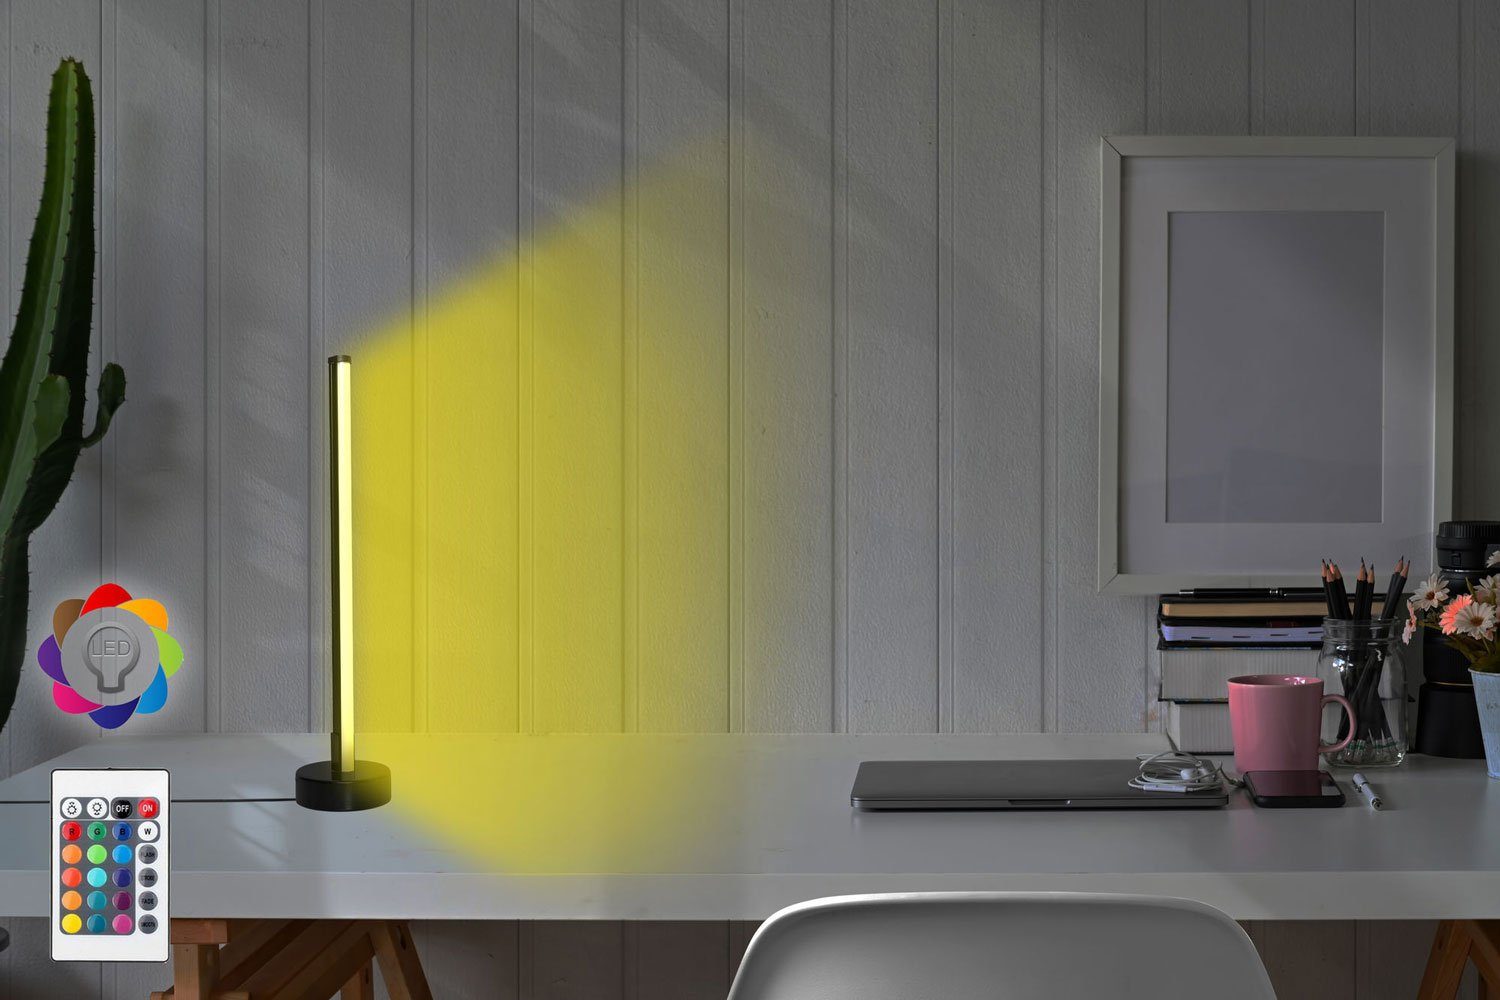 Feldmann-Wohnen Schreibtischlampe Schreibtischlampe Lumos Multicolor 10x10x45cm, LED-Streifen #dv88, 395NGR1107 Mensa Multicolor